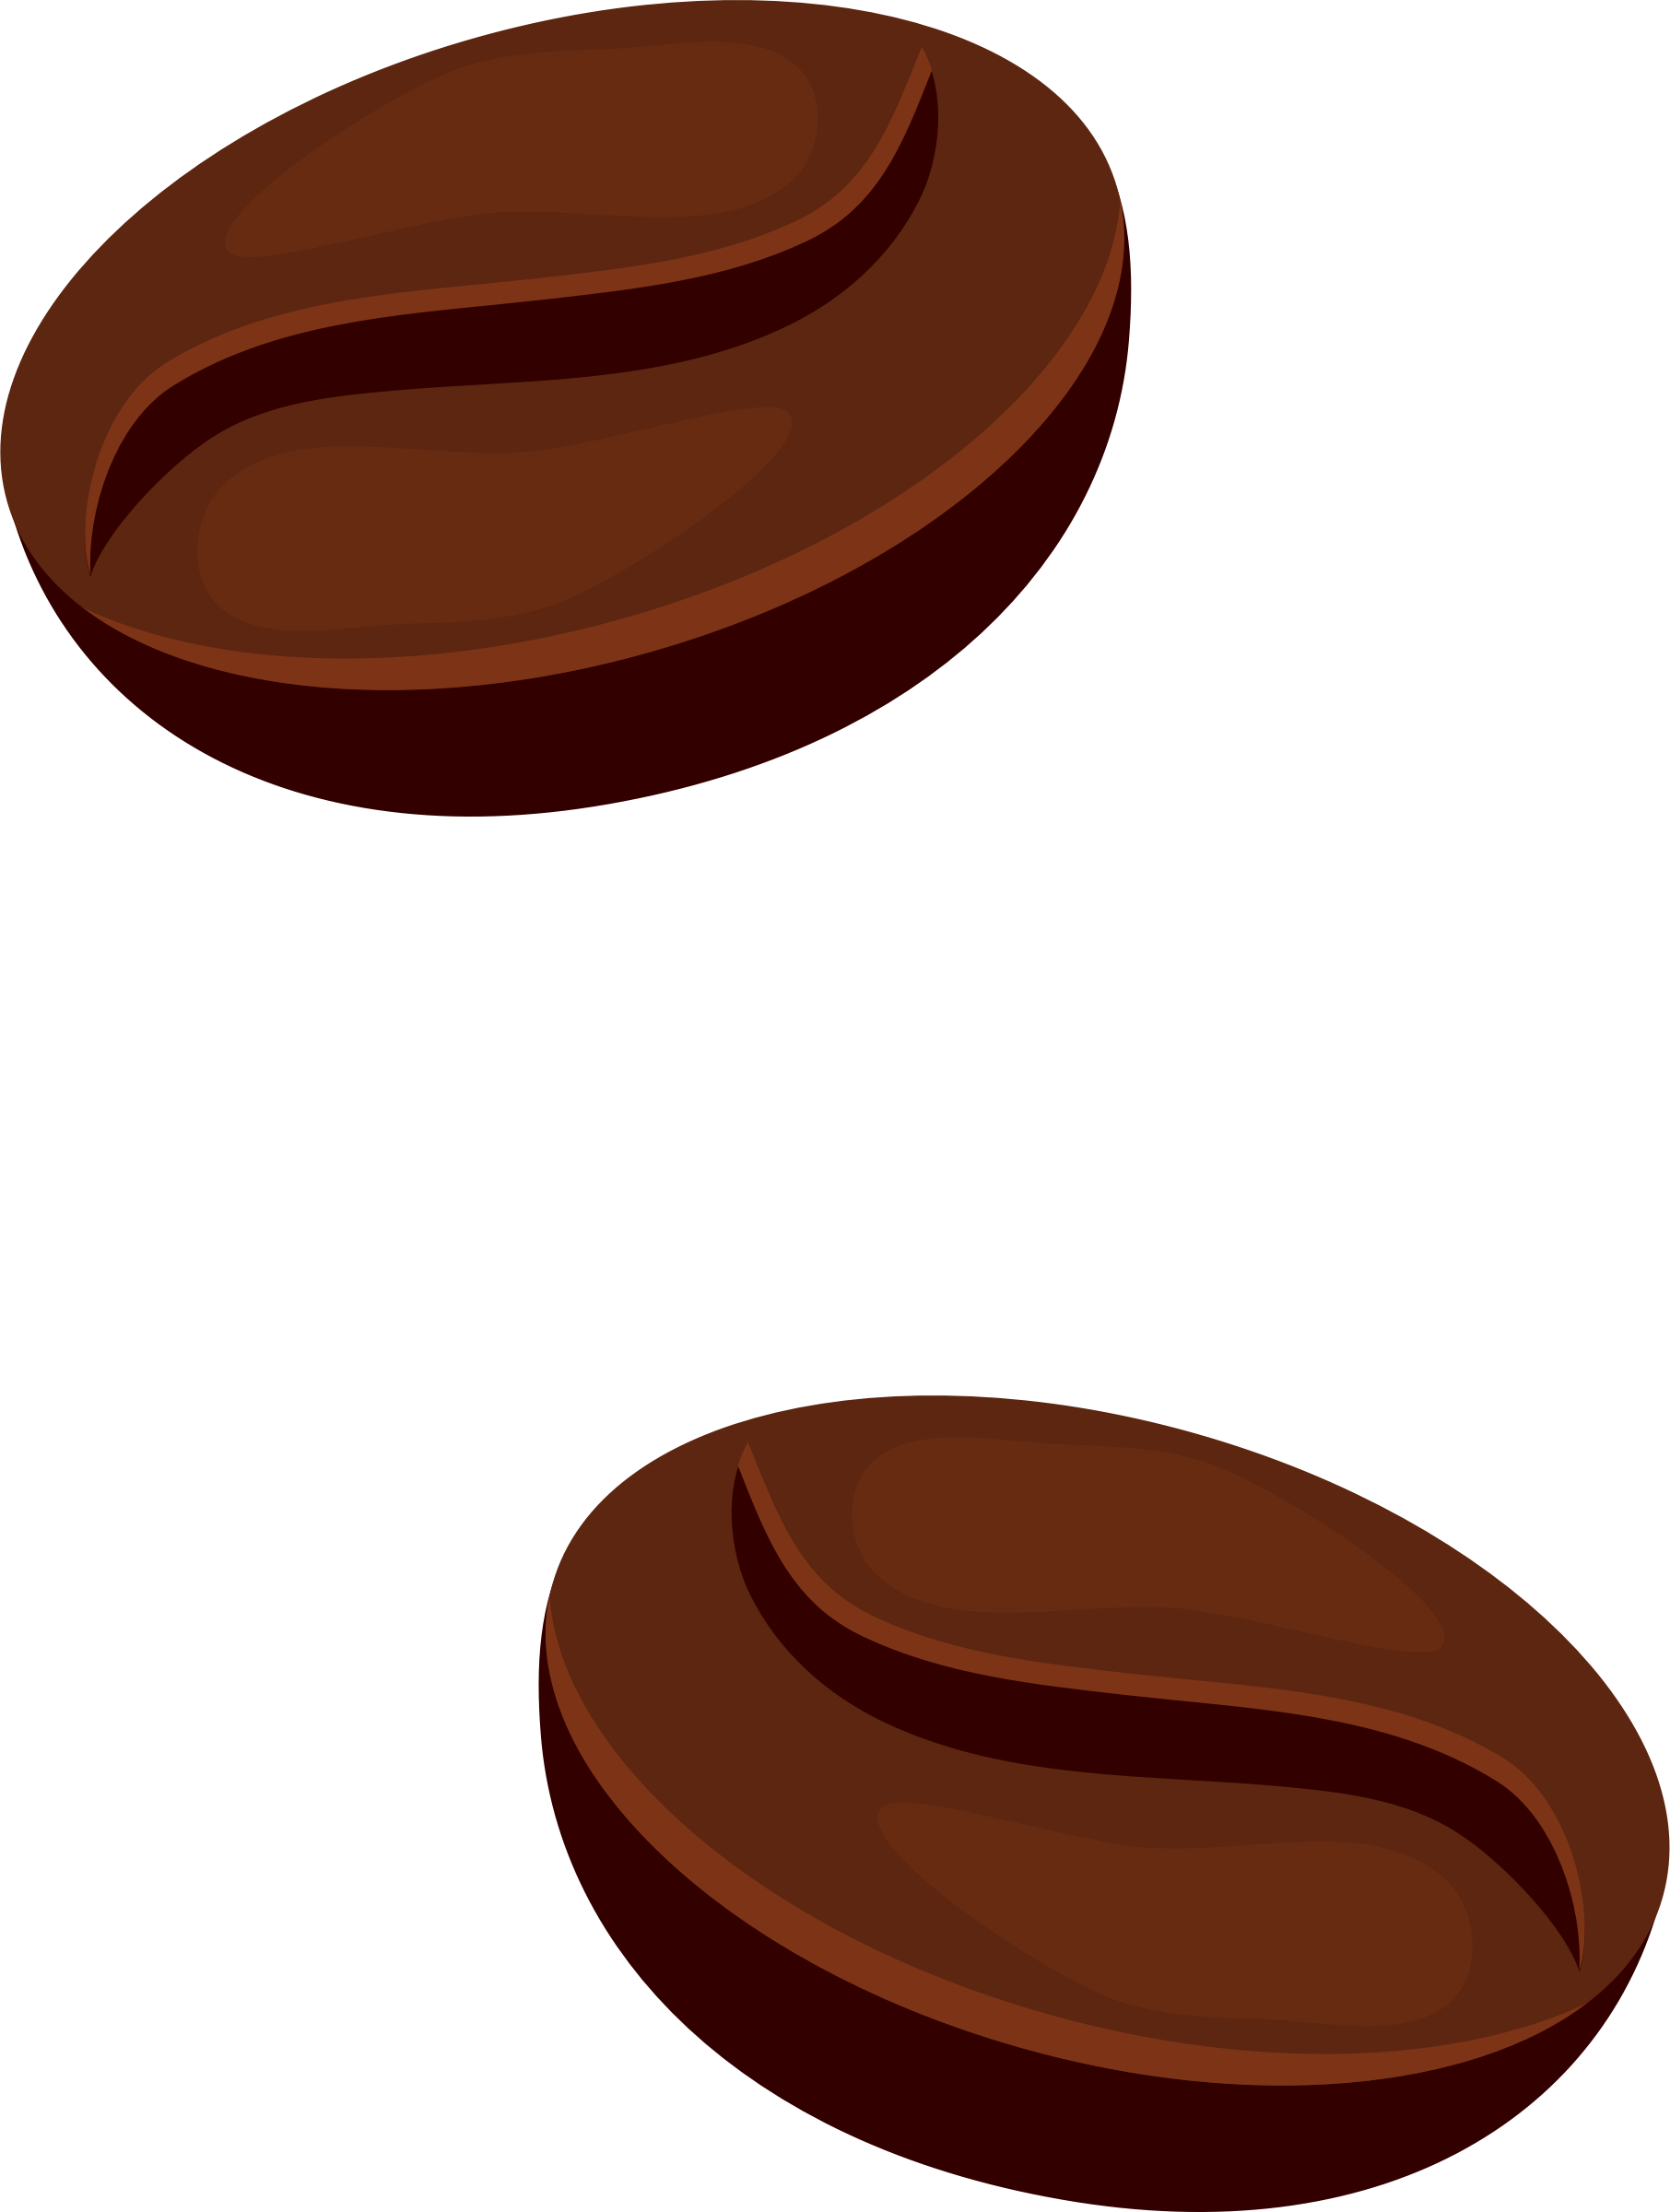 Coffee Beans - Coffee Beans Clip Art